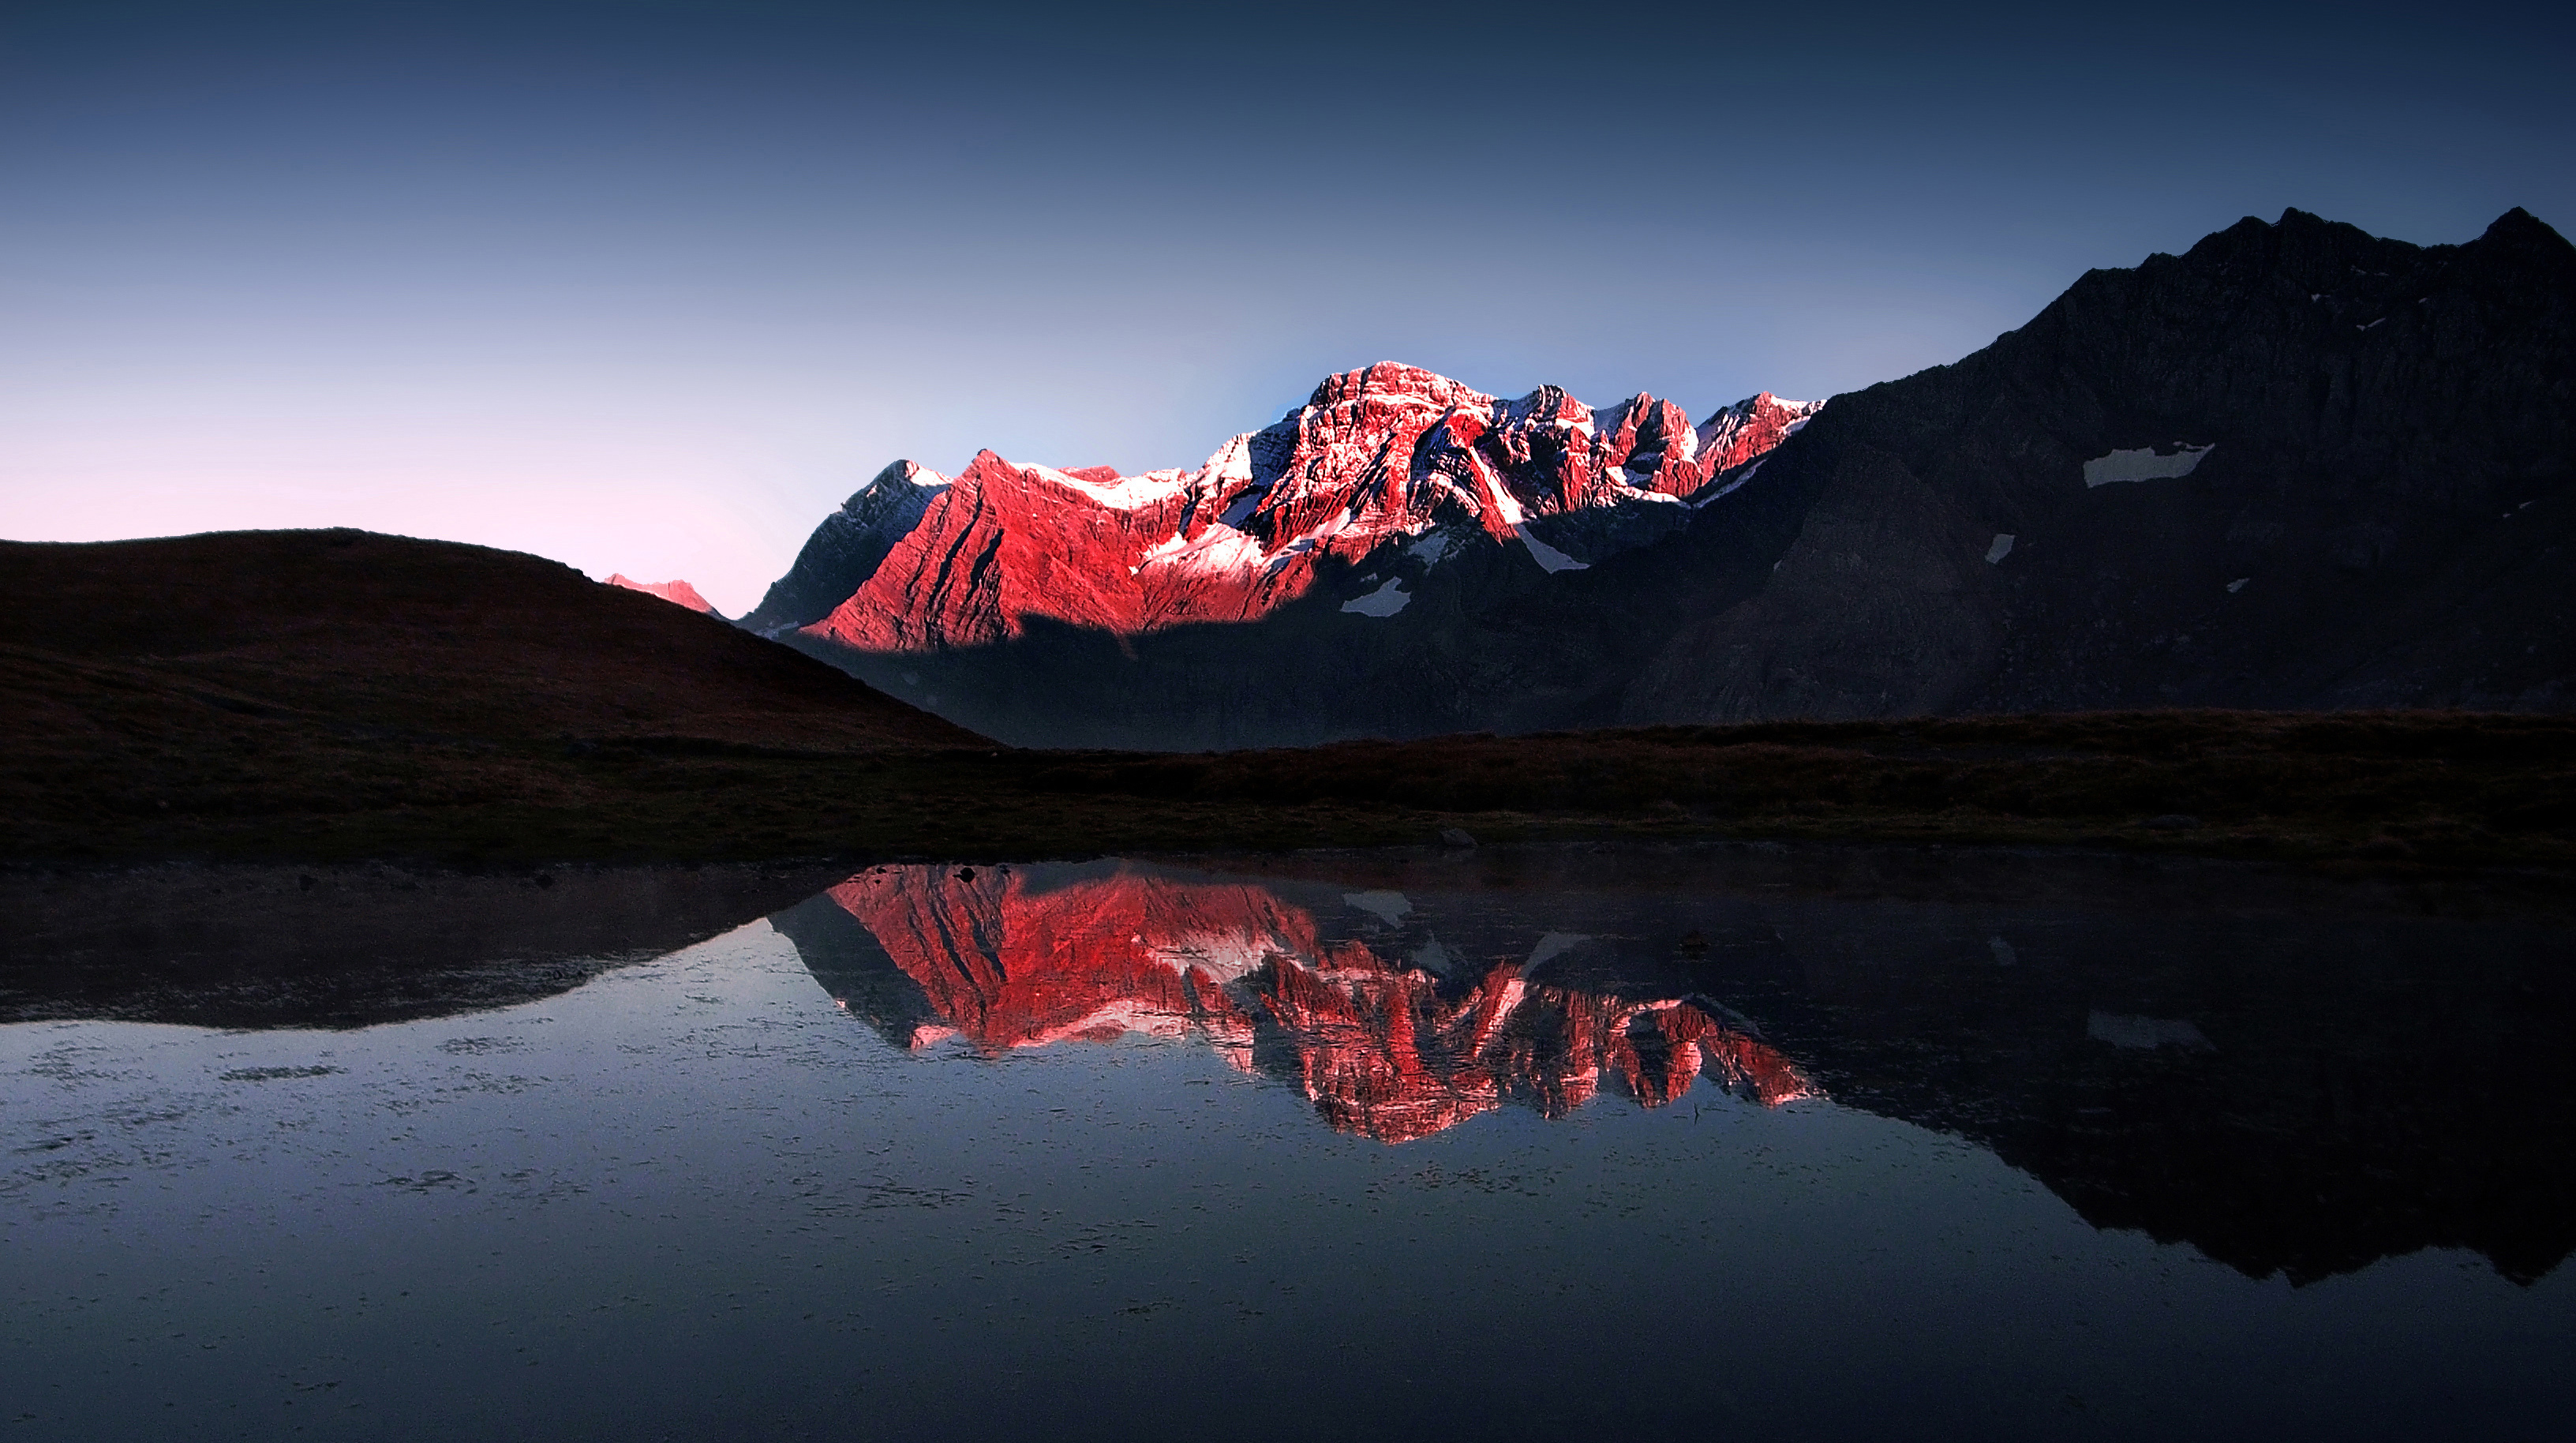 Обои на 10 4. Озеро в горах. Красная гора. Горы с красным оттенком. Бордовые горы.